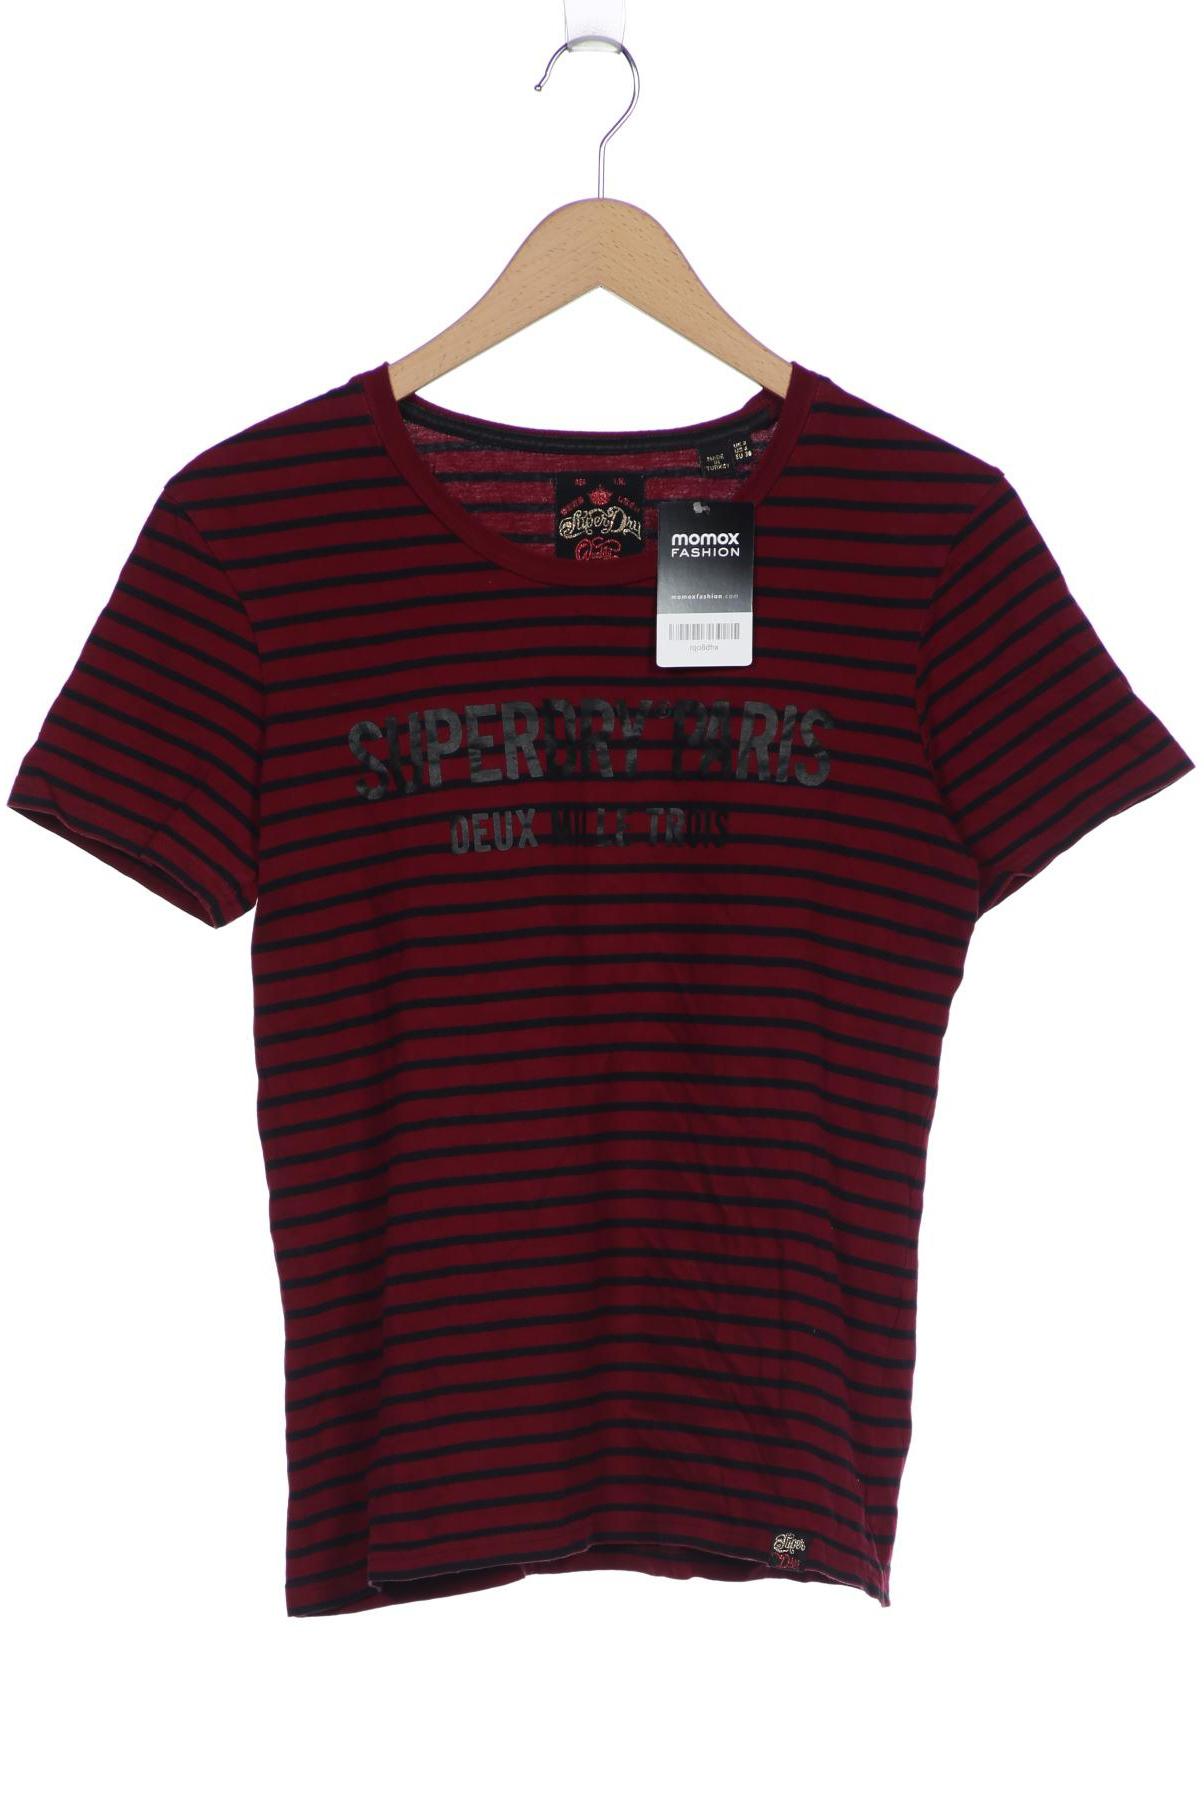 Superdry Damen T-Shirt, bordeaux, Gr. 36 von Superdry